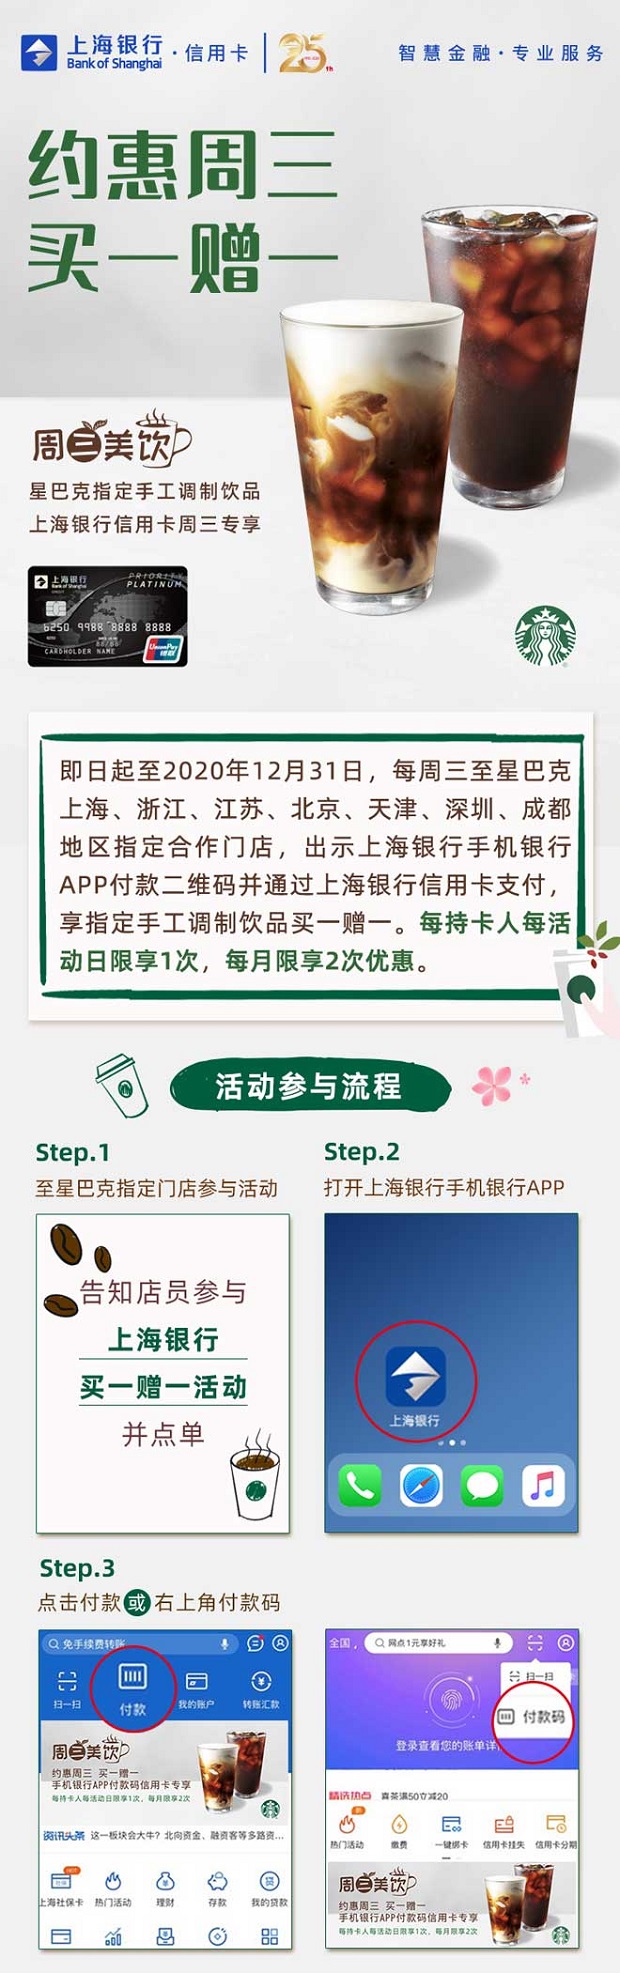 上海银行信用卡星巴克每周三买一赠一每月享2次